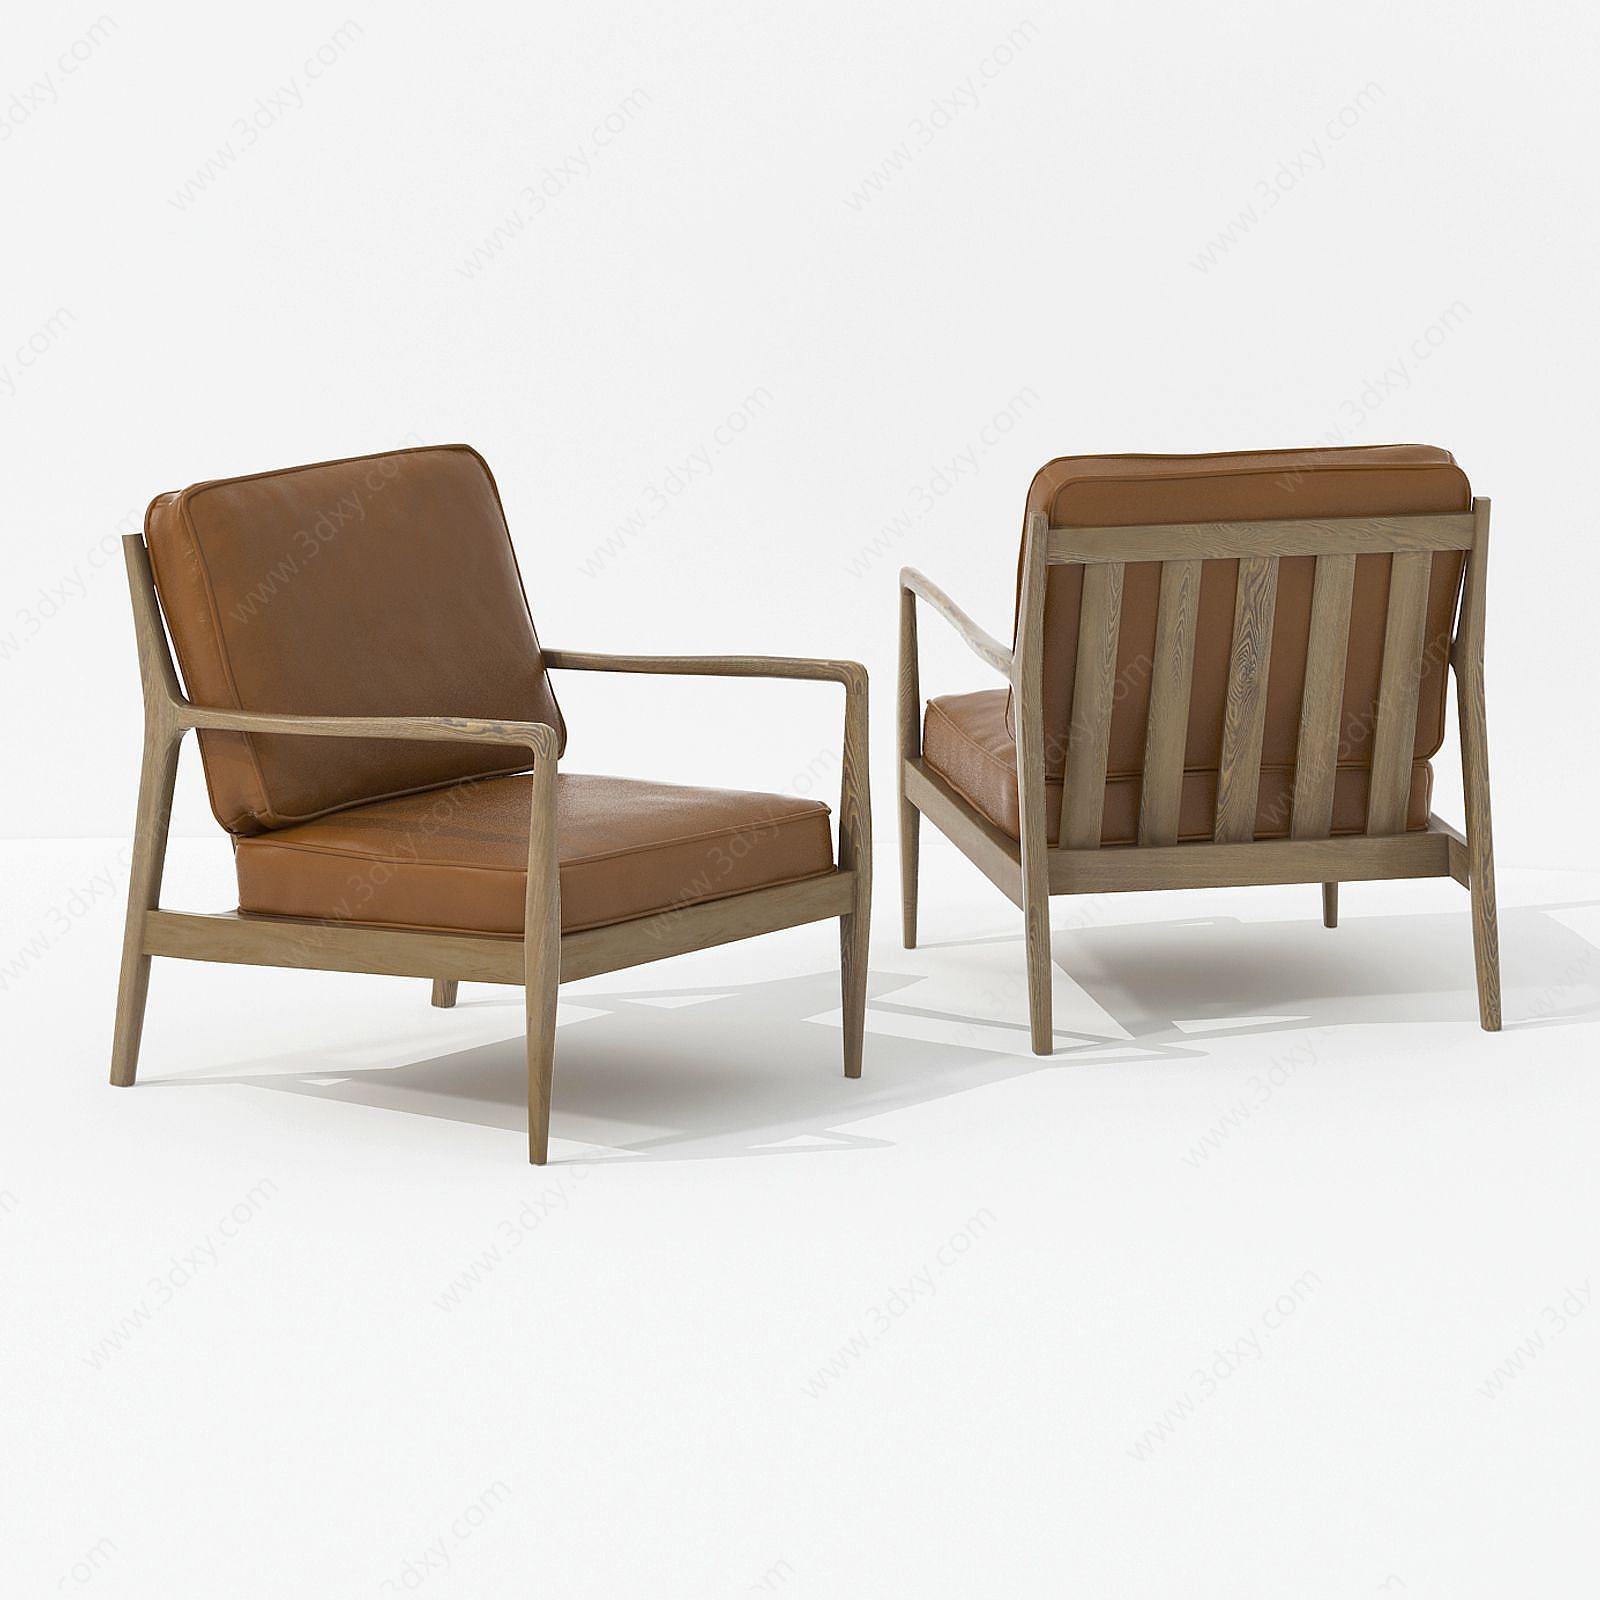 新中式休闲布艺木质组合椅3D模型